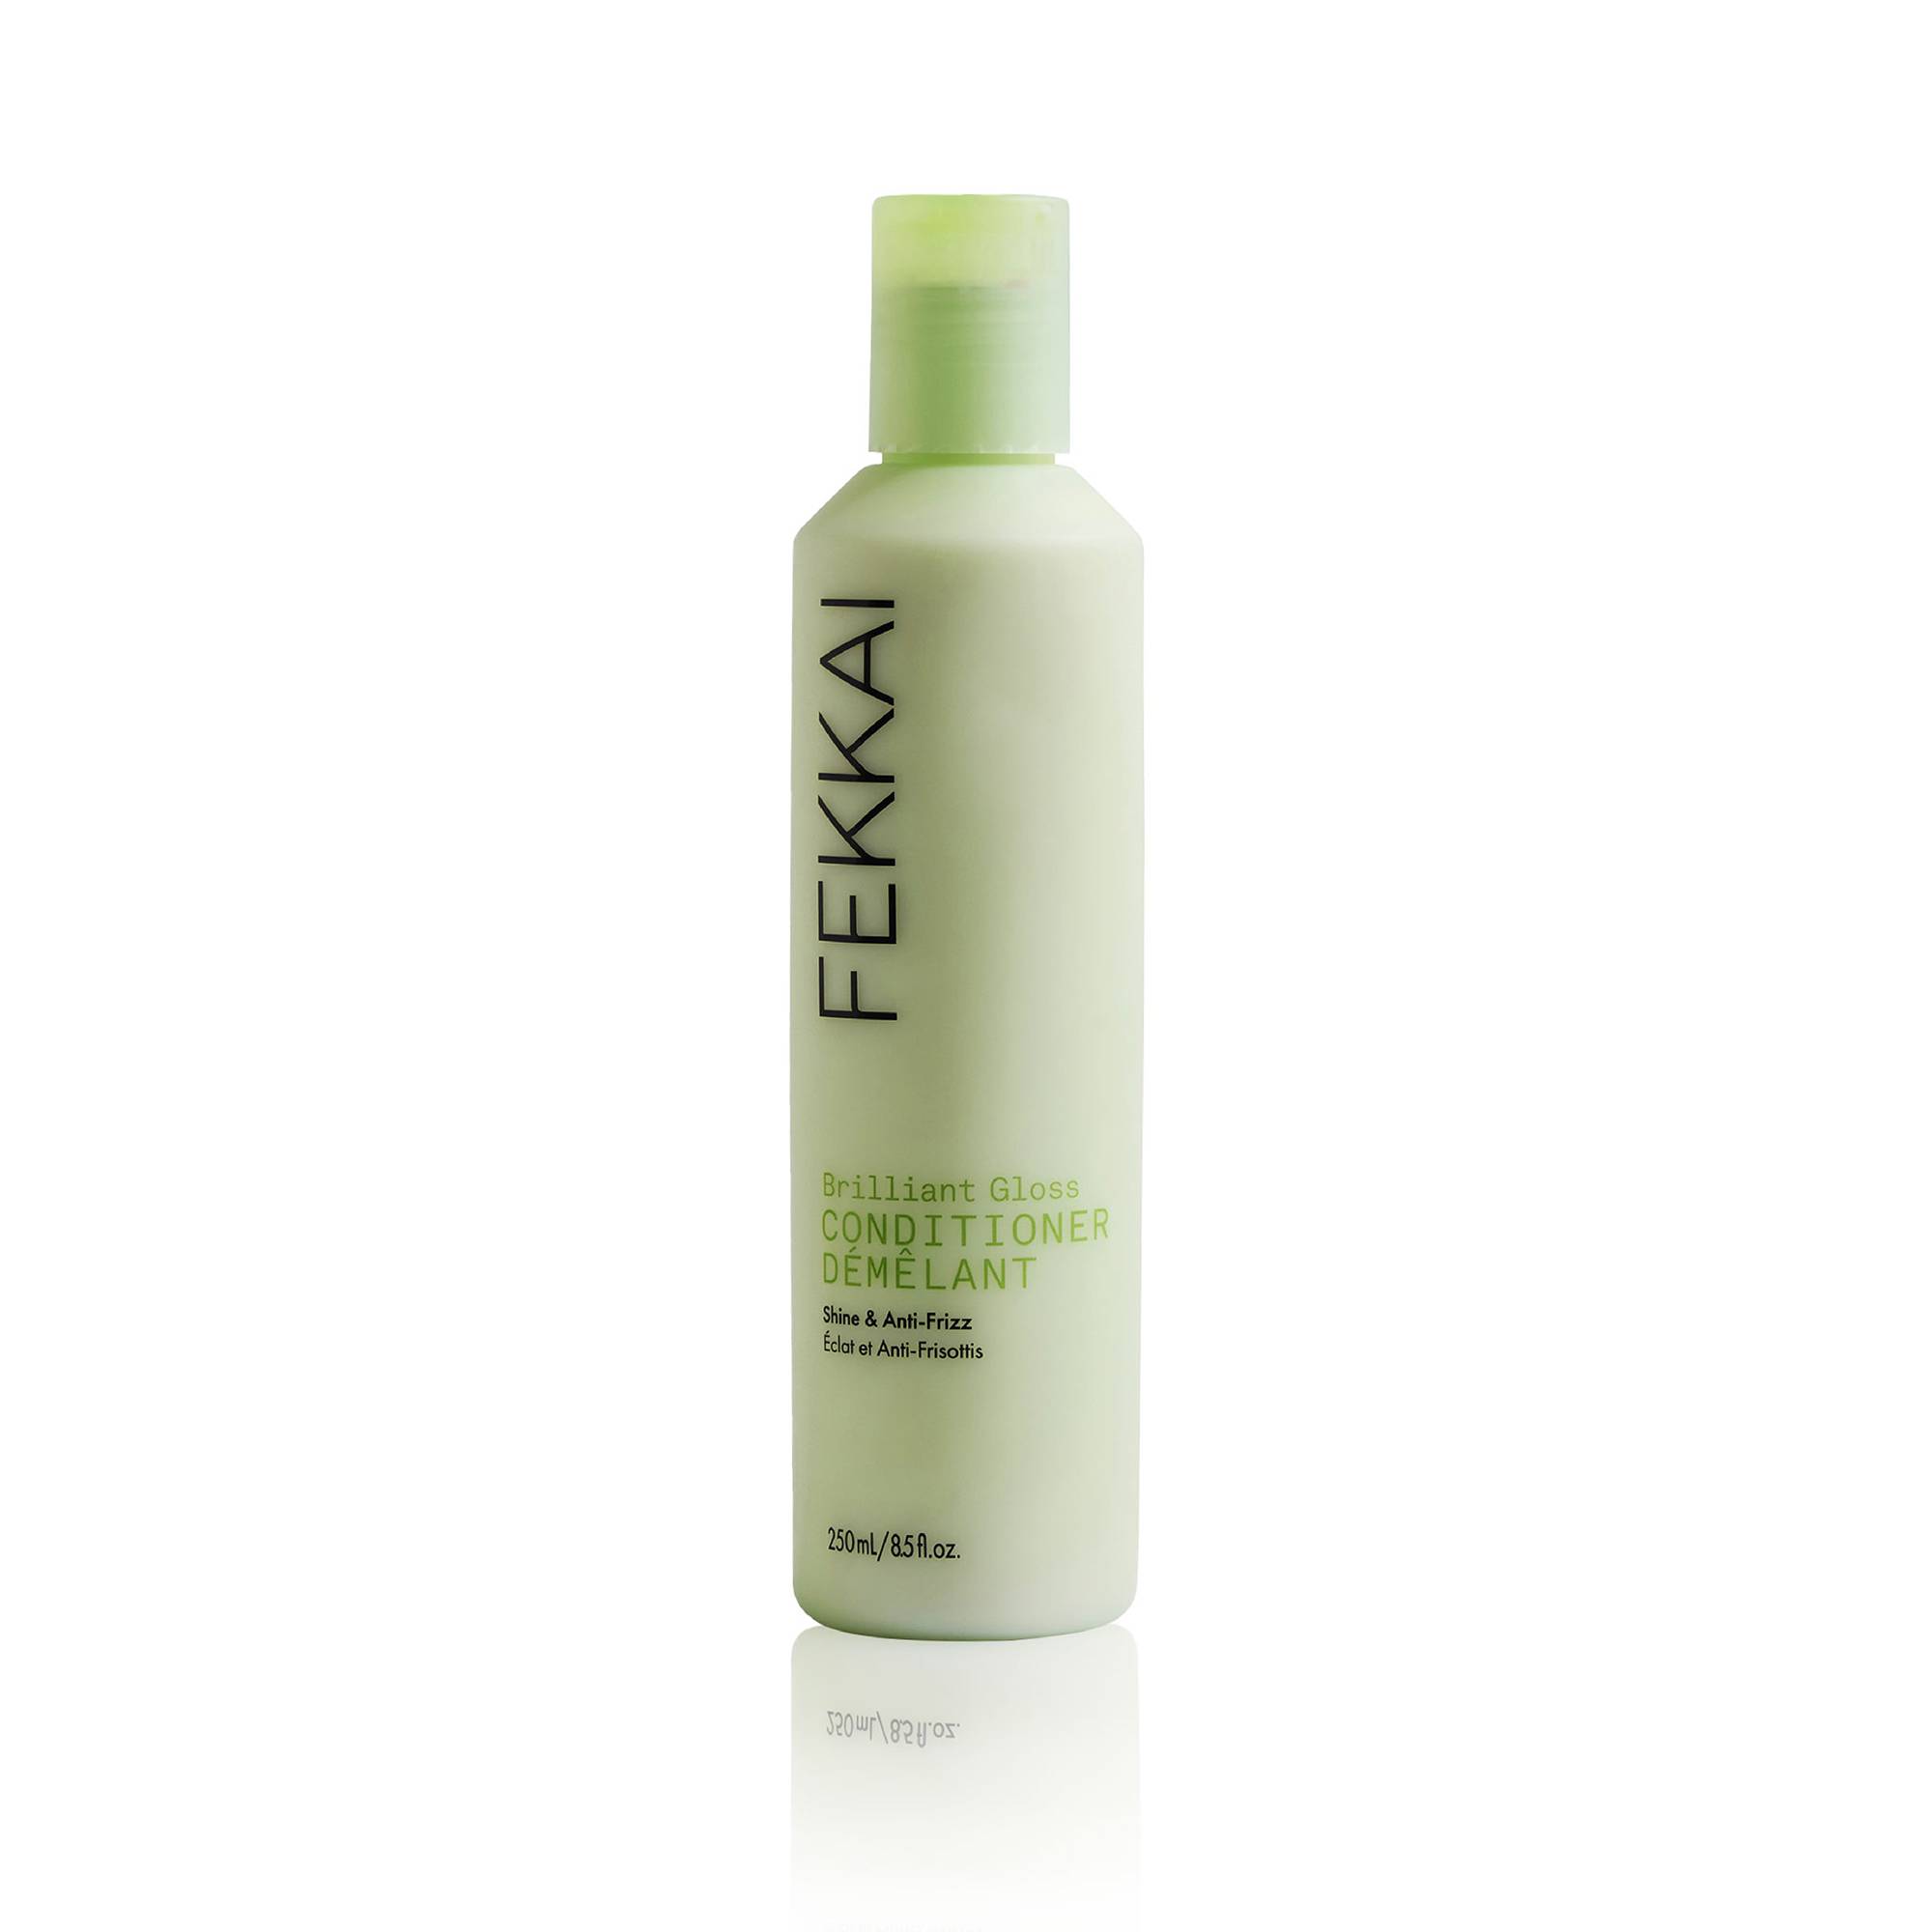 Après-shampoing brillance et anti-frisottis Brilliant Gloss de la marque Fekkai Contenance 250ml - 1